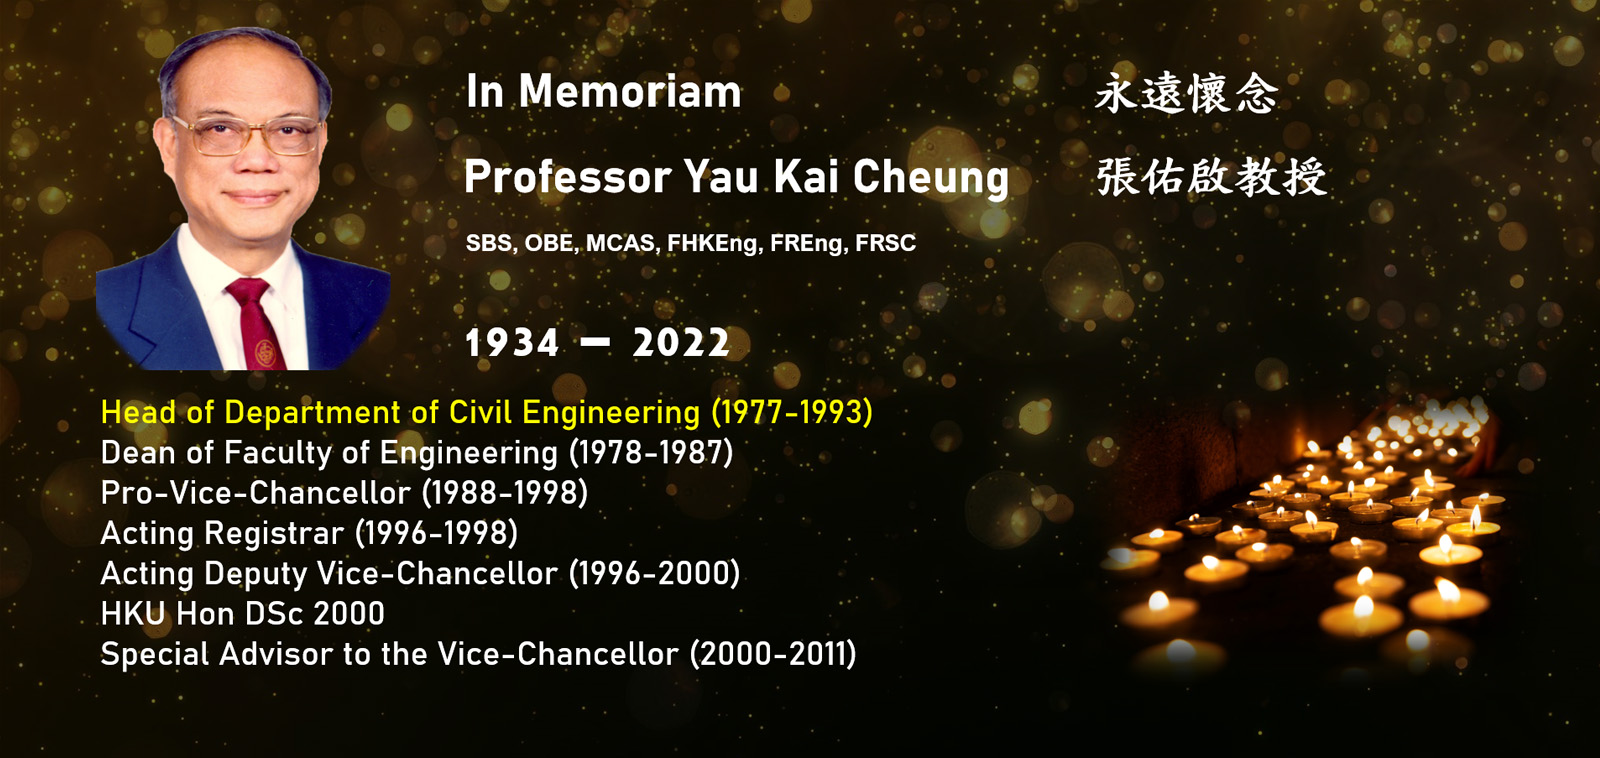 In Memoriam Professor Y.K. Cheung